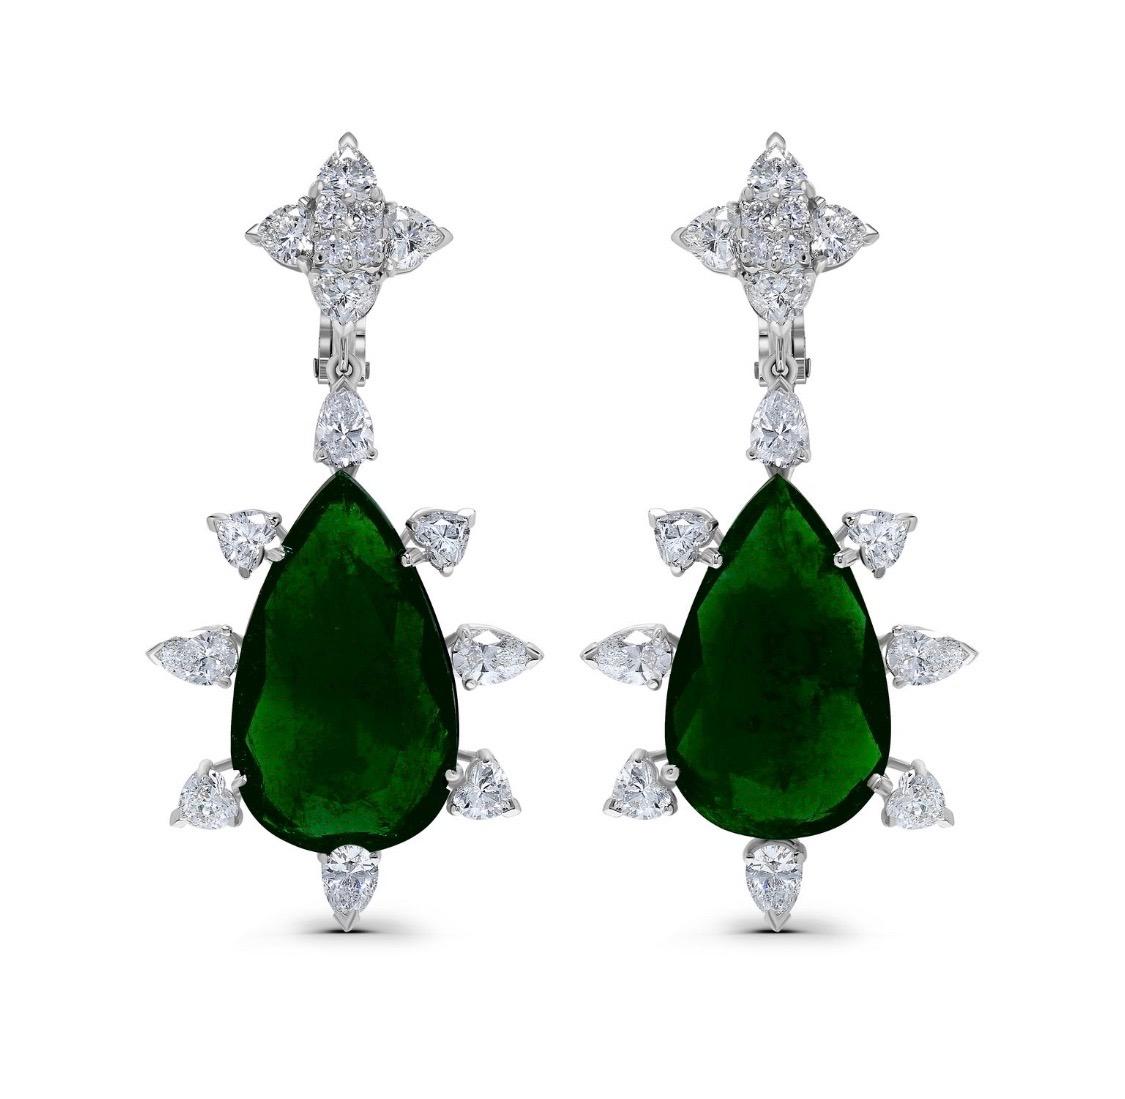 Pear Cut Emilio Jewelry Certified 33 Carat Colombian Emerald Diamond Earrings For Sale